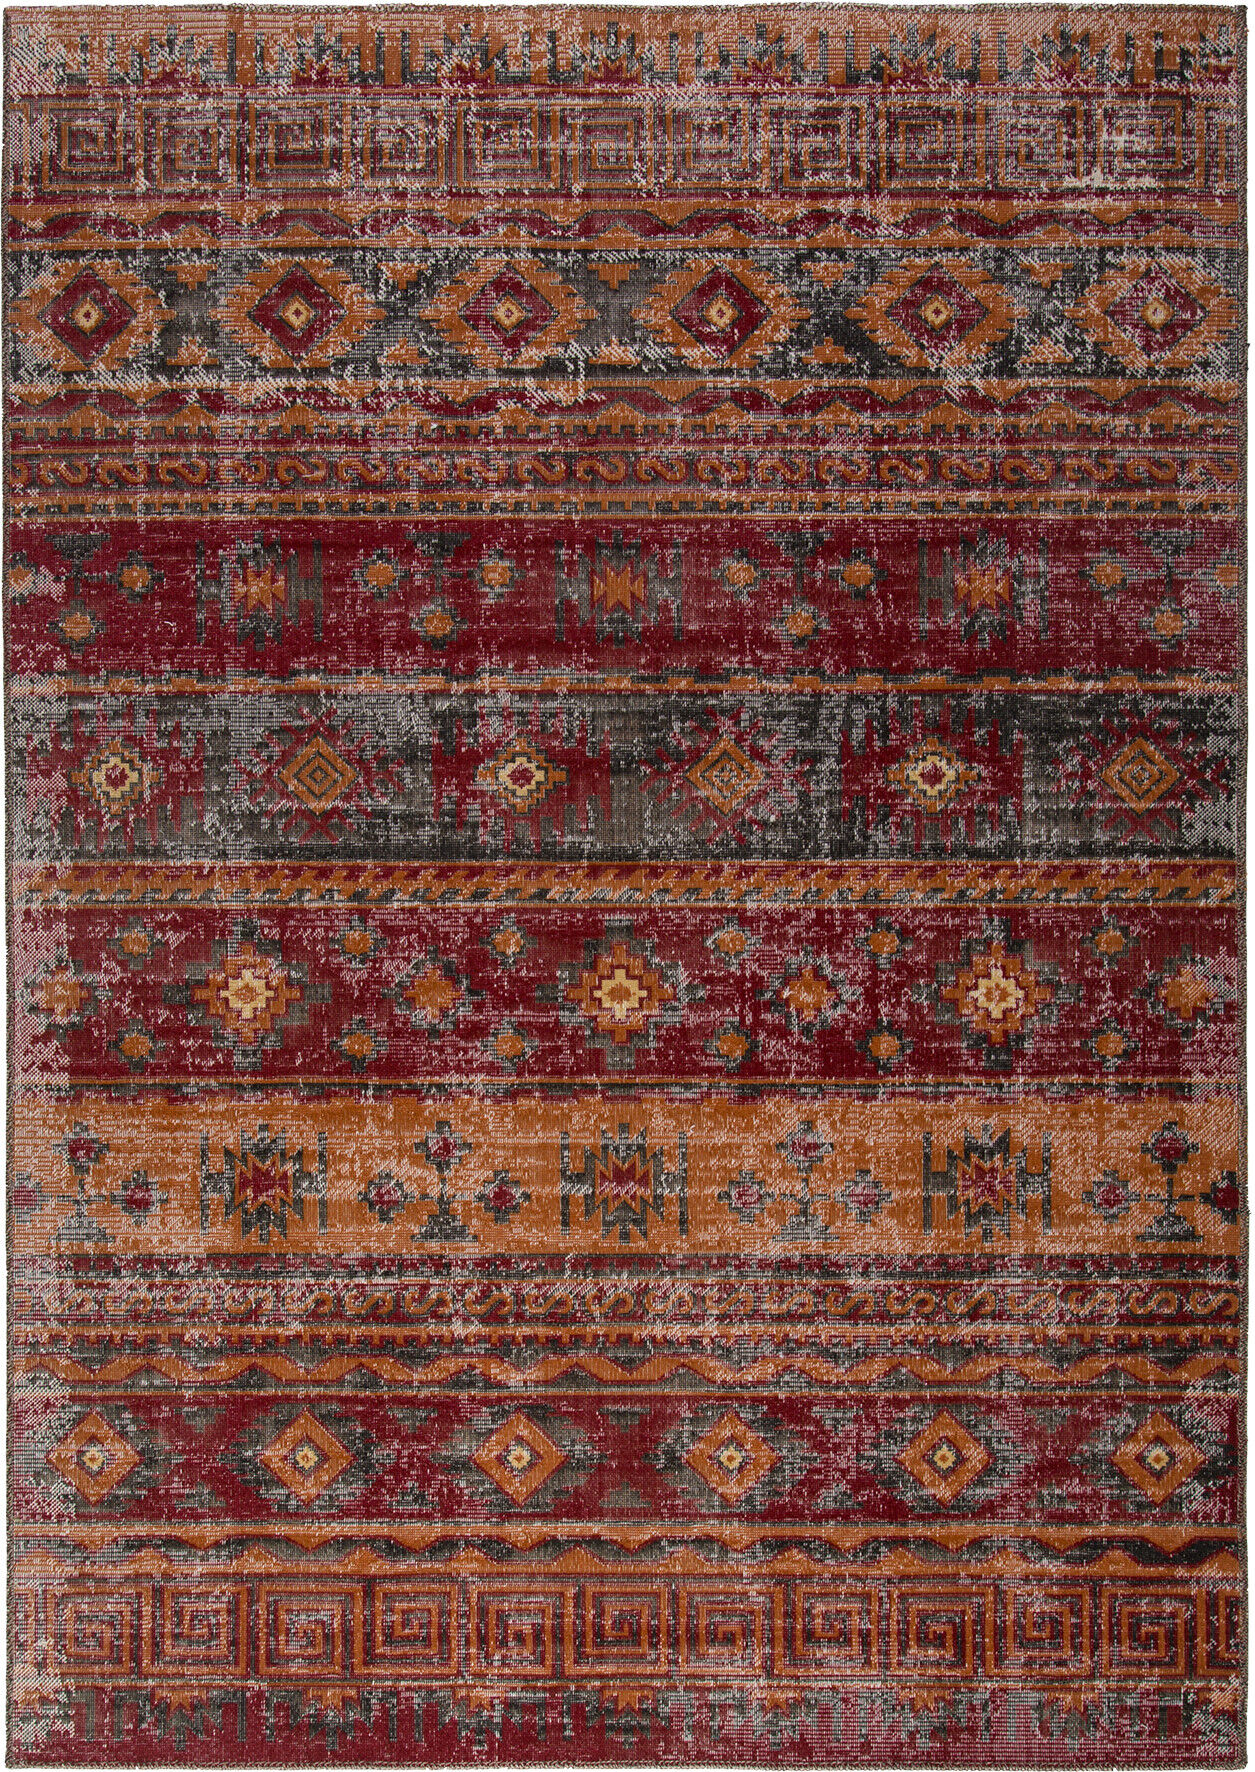 Obsession koberce Kusový koberec Tilas 241 Red - 160x230 cm